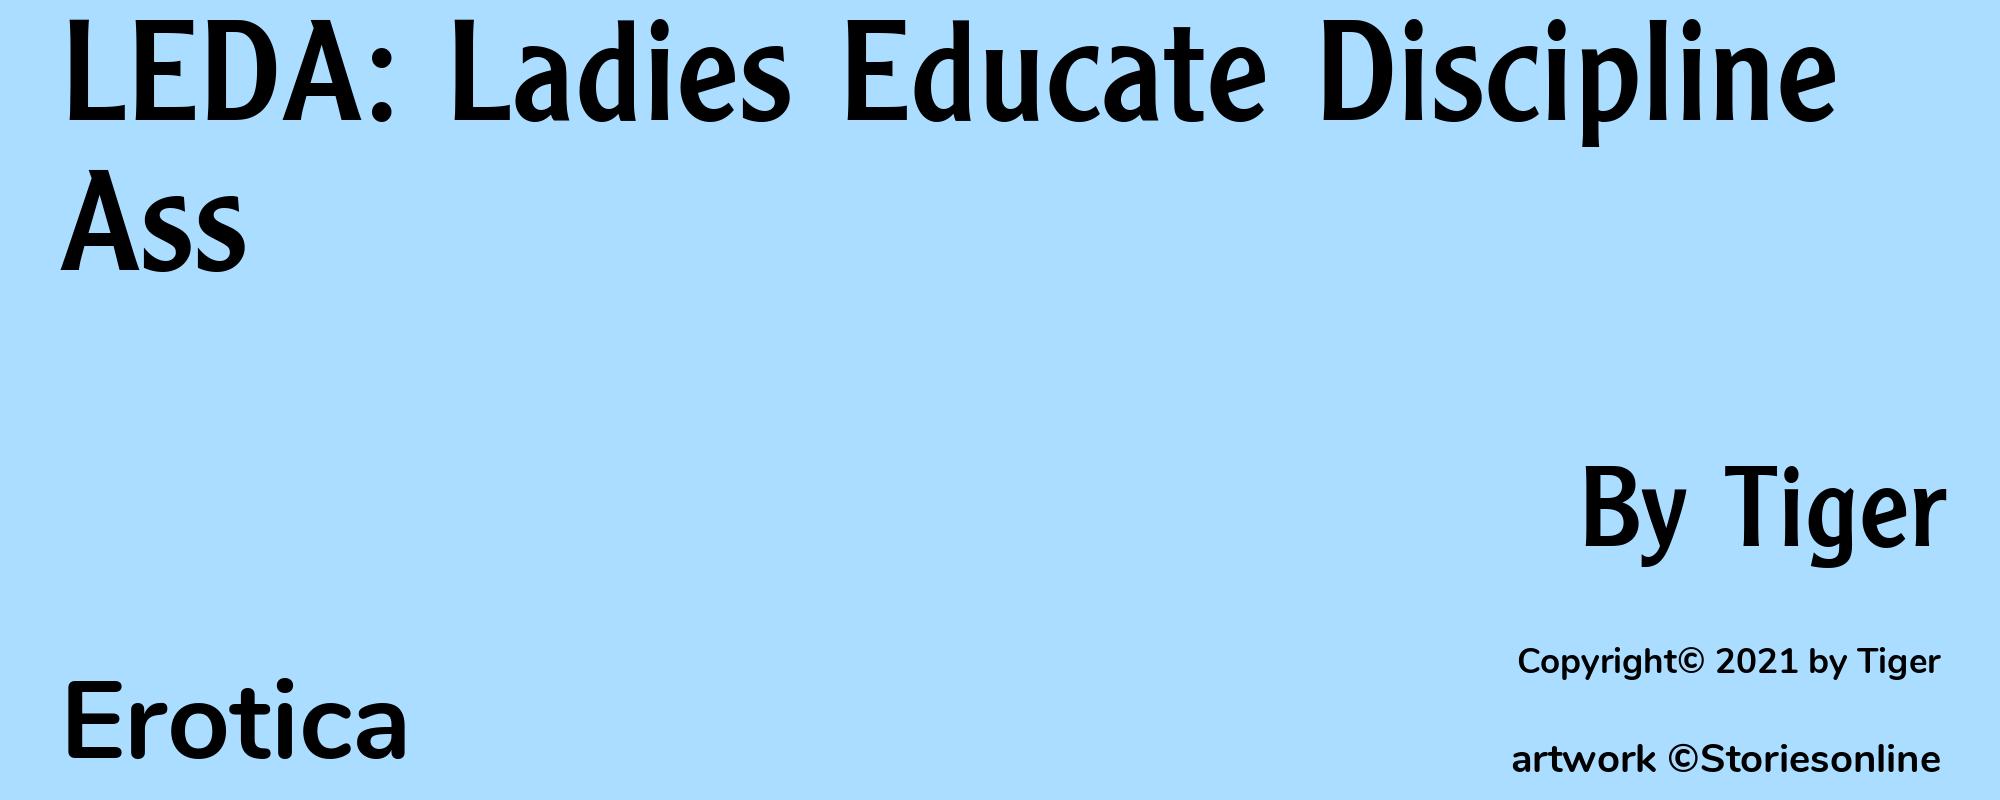 LEDA: Ladies Educate Discipline Ass - Cover